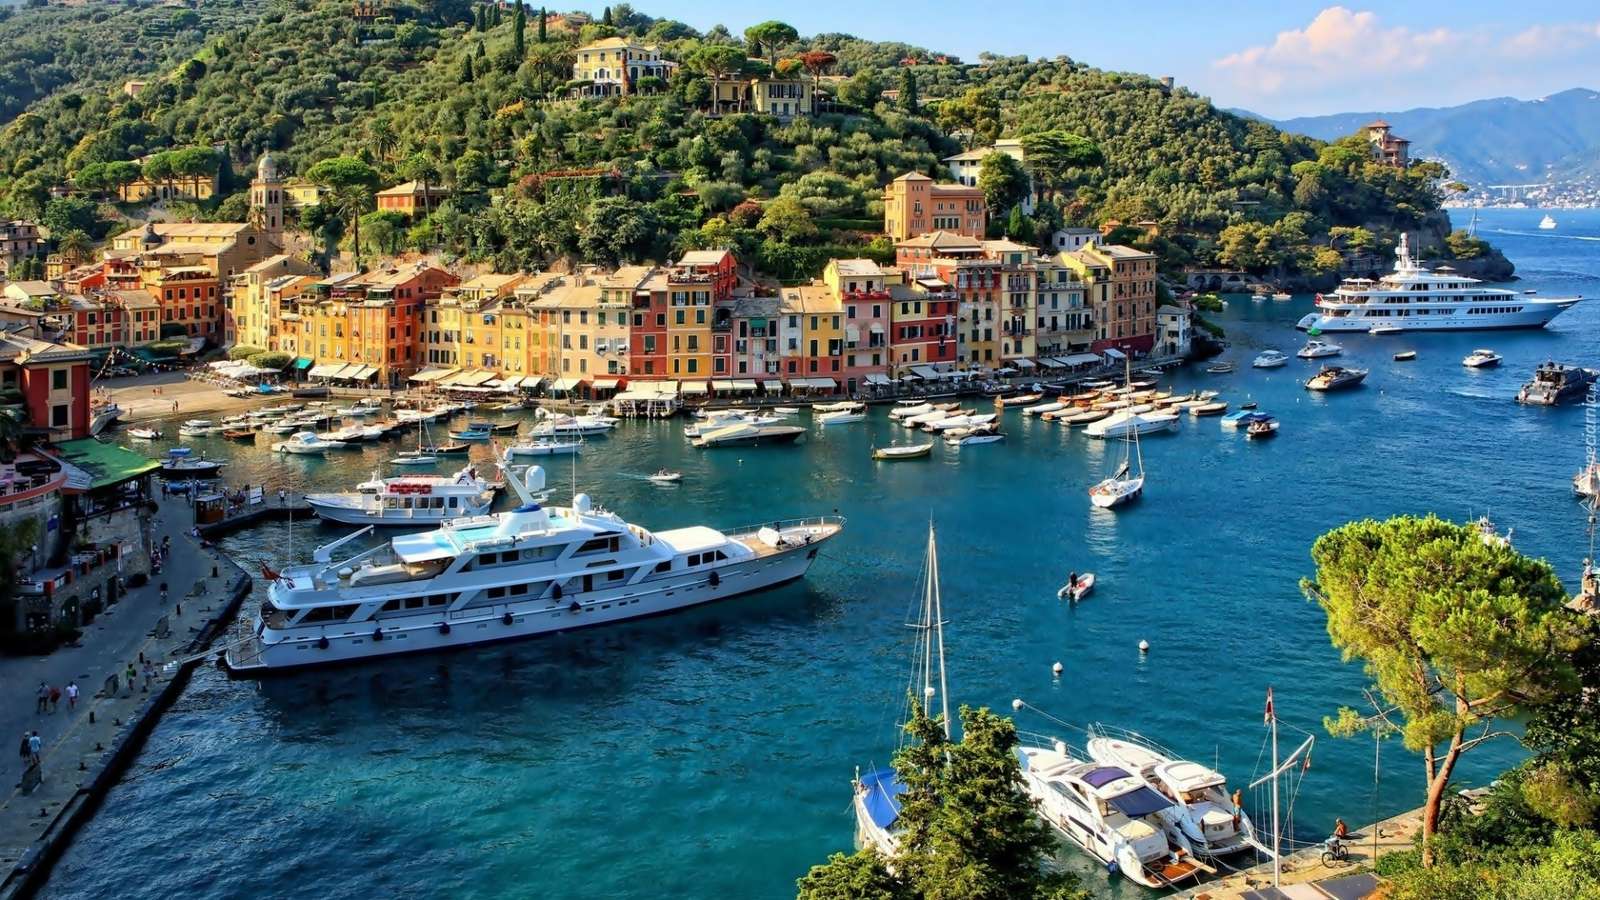 La ciudad de Portofino - Itali rompecabezas en línea